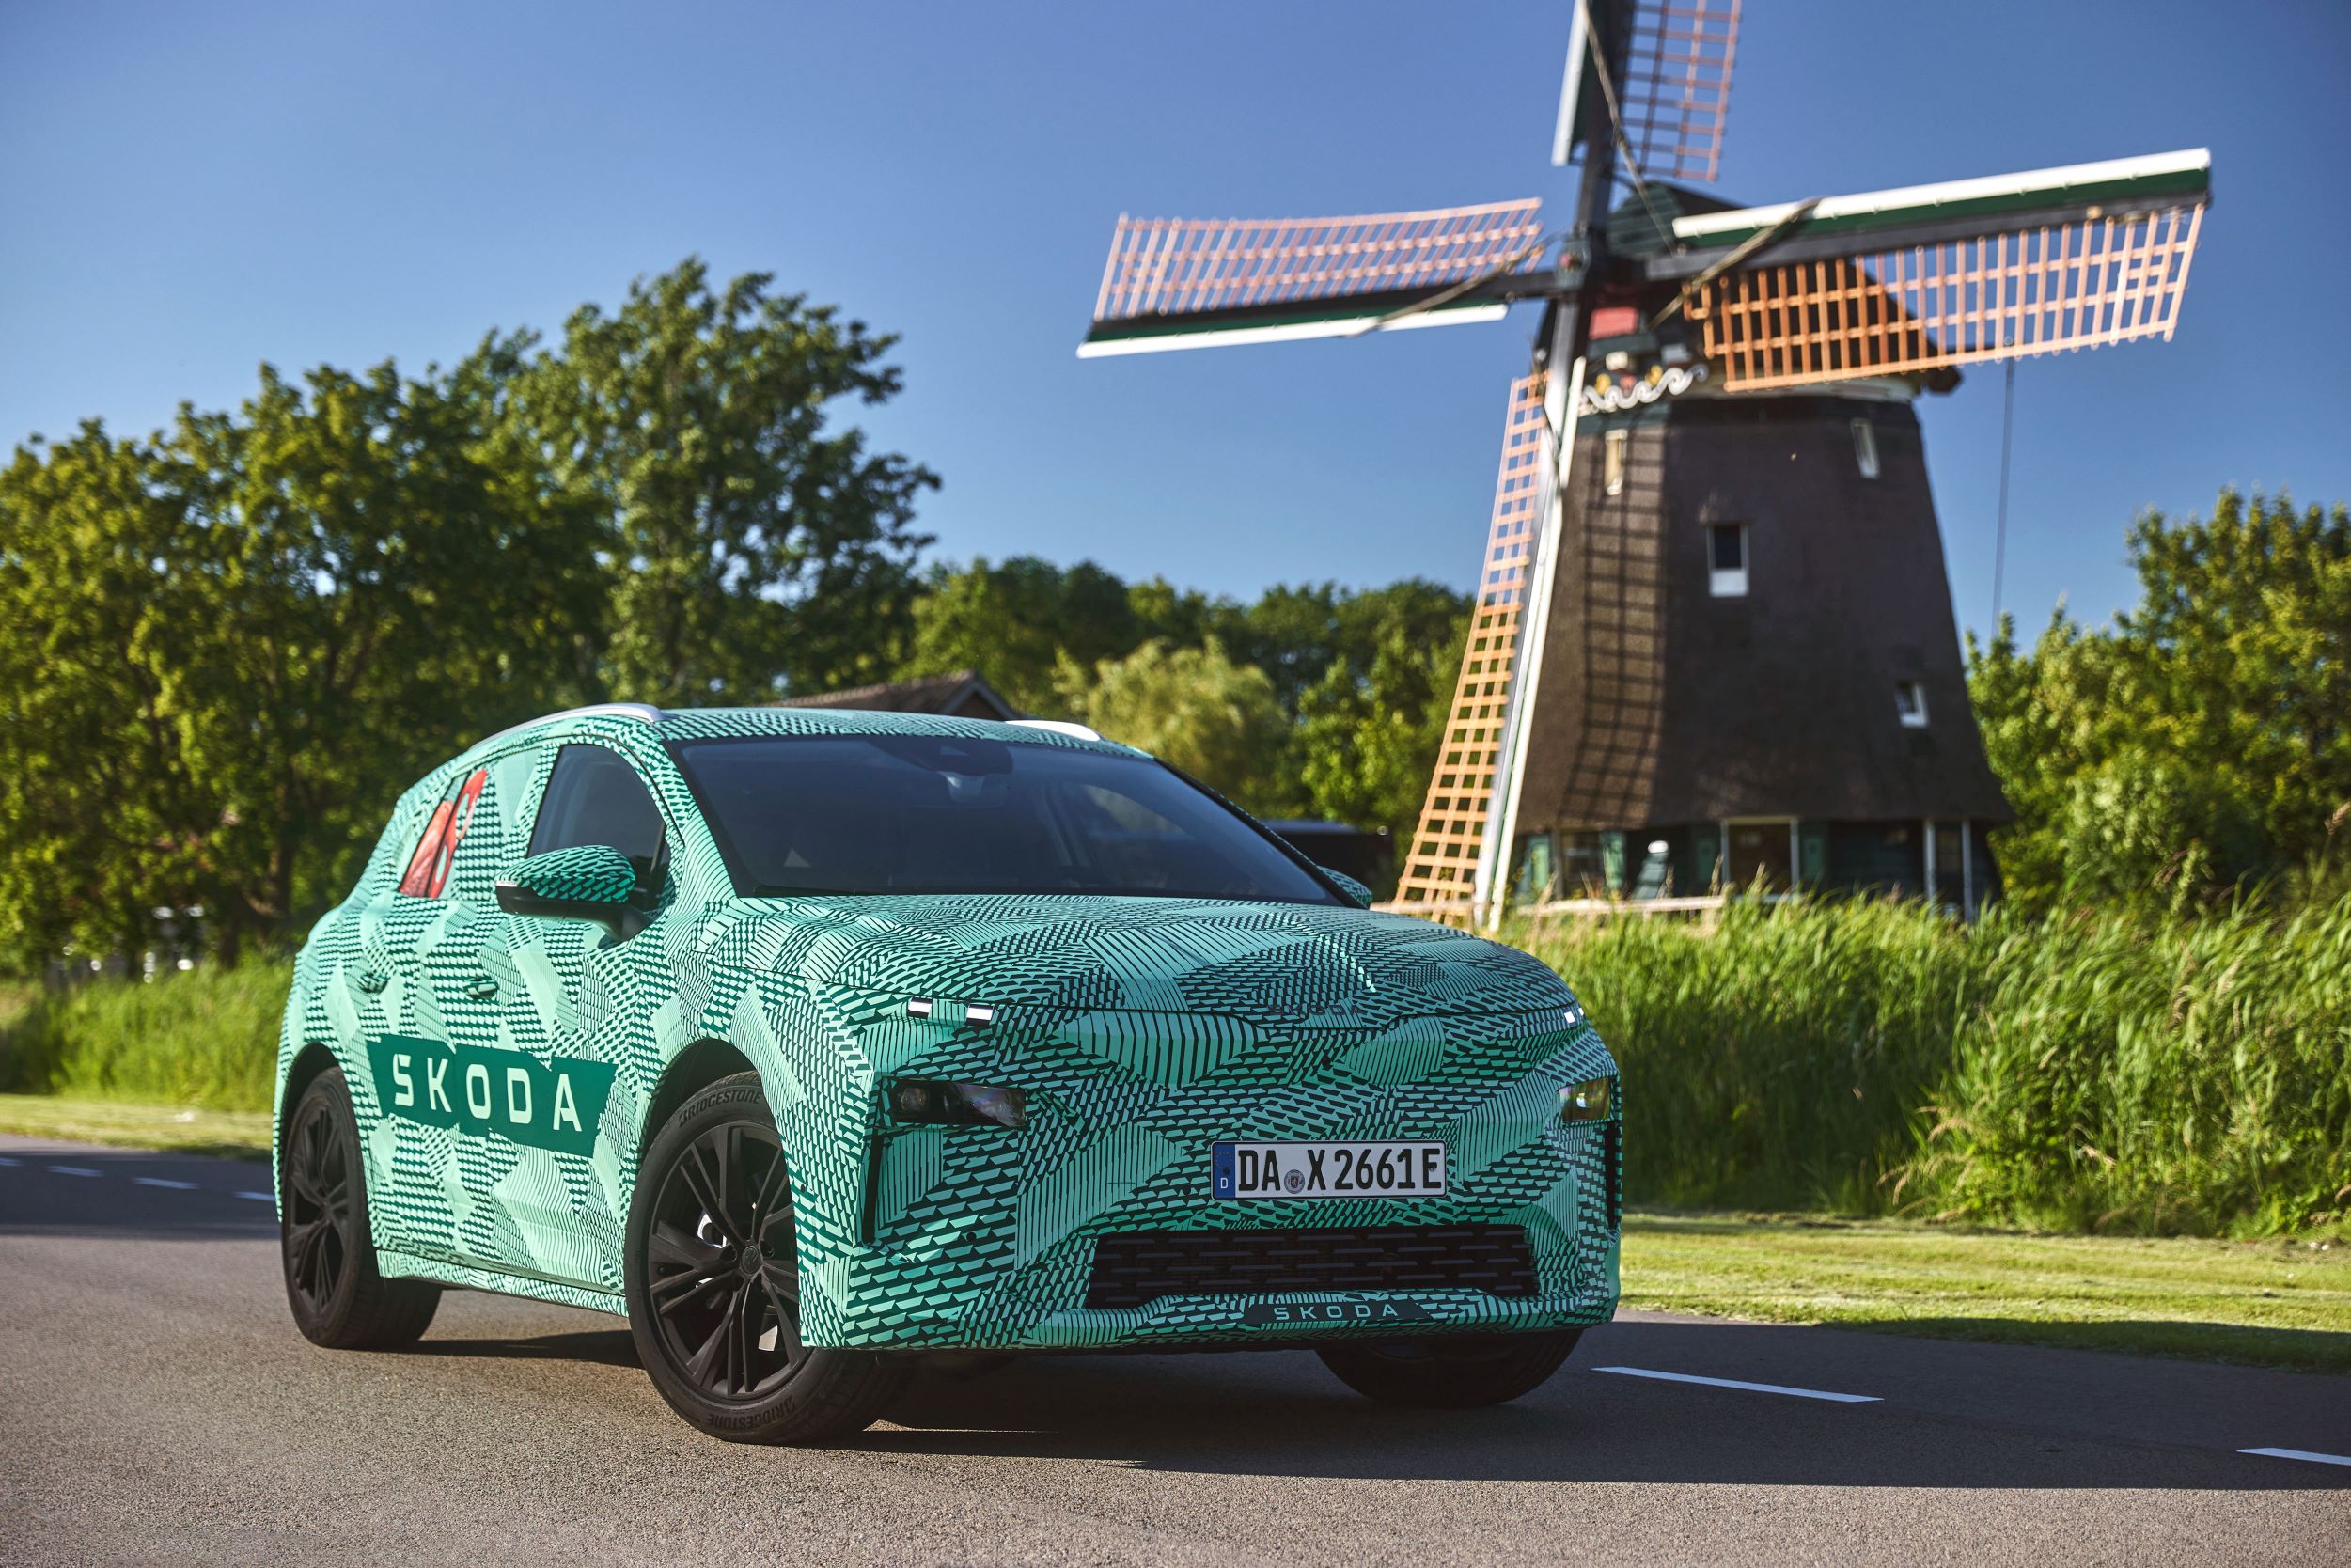 Škoda Elroq: SUV compacto 100% elétrico é o companheiro perfeito para aventuras ao ar livre. Conheça o novo modelo da marca checa